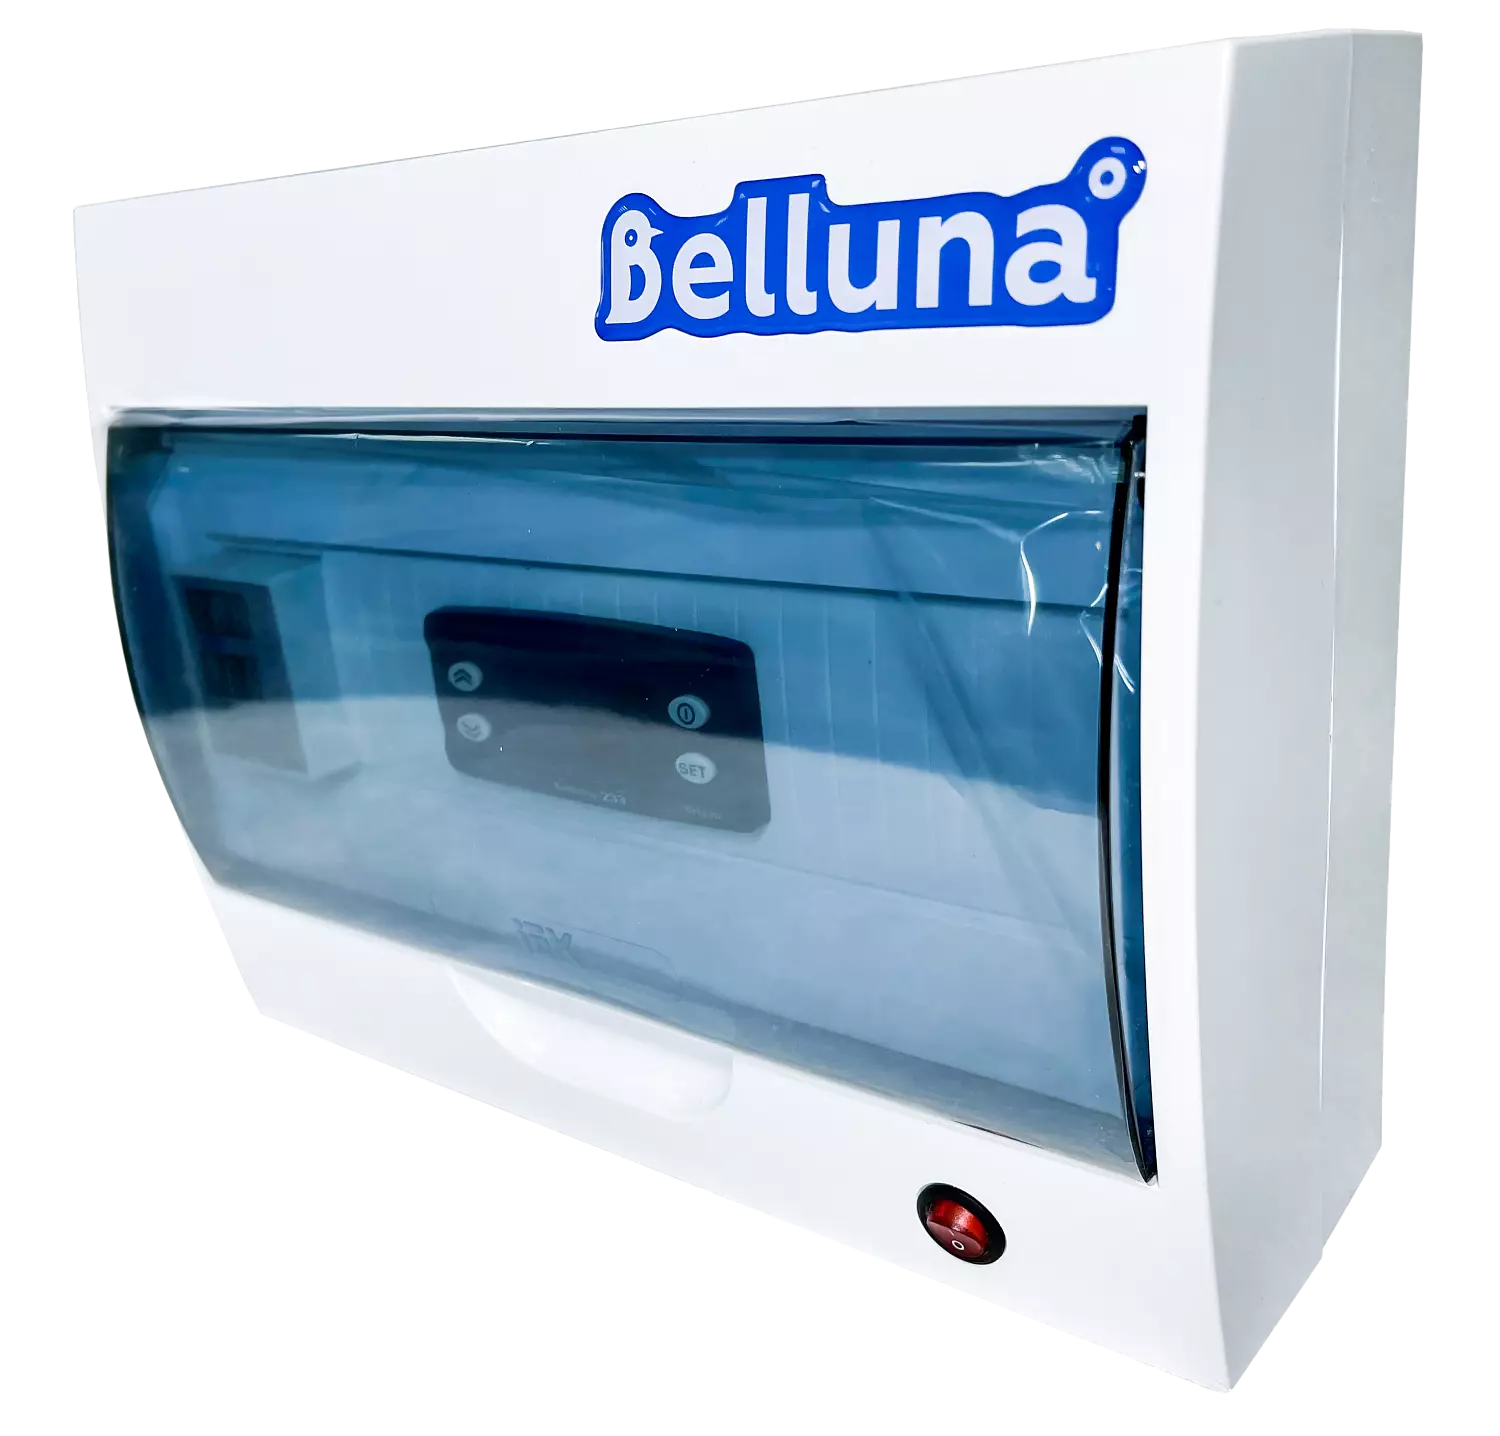 сплит-система Belluna iP-5 Липецк